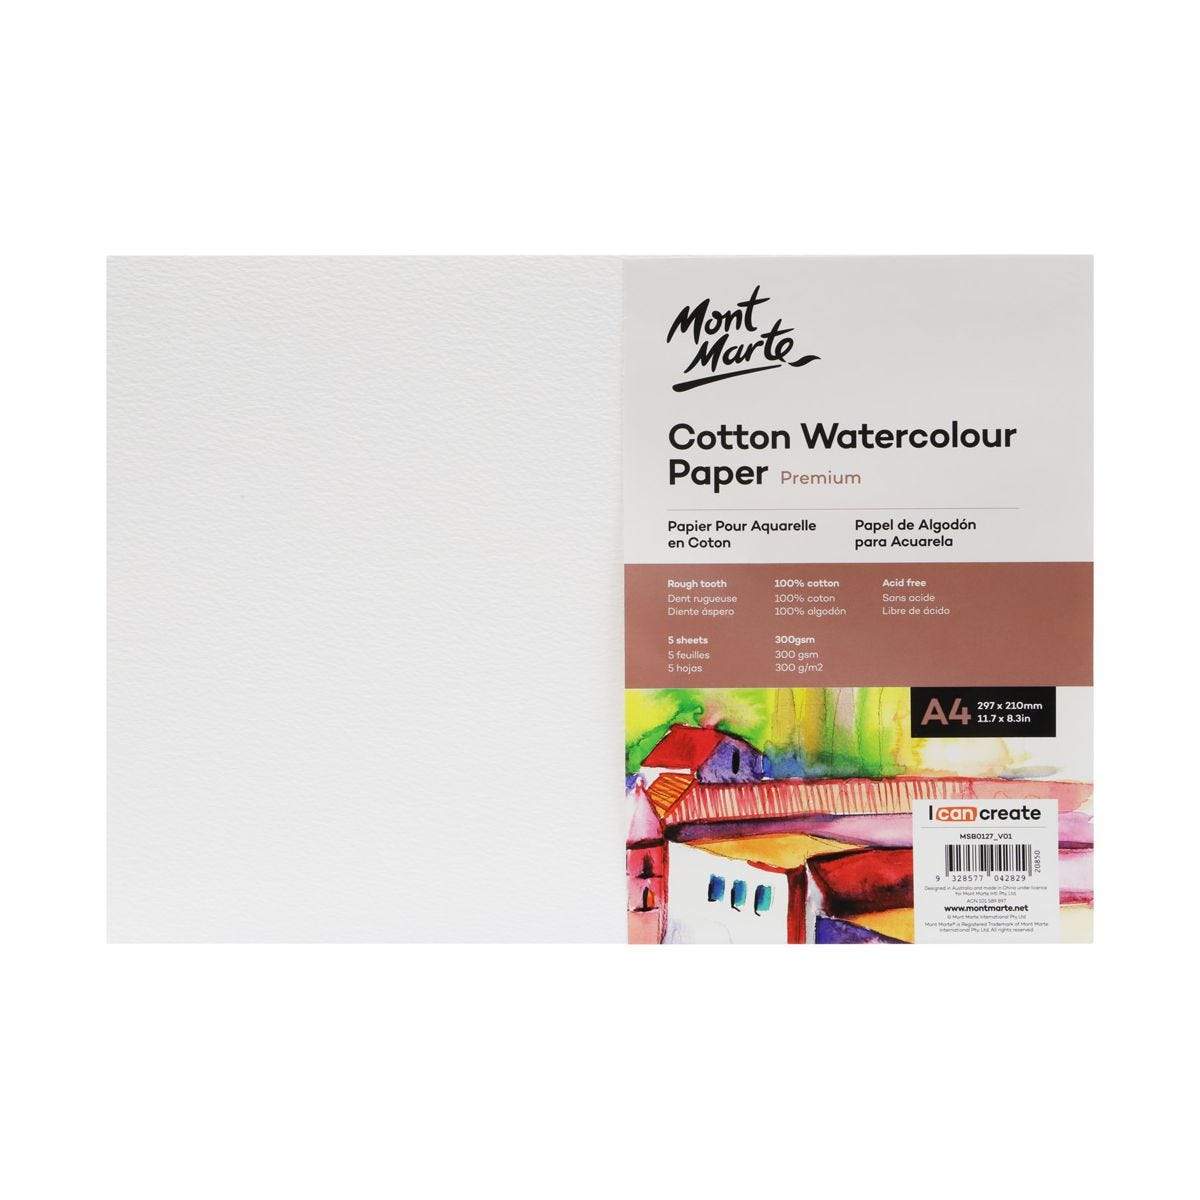 Cotton Watercolour Paper Premium 300gsm 5 sheets (2 sizes) - CRAFT2U